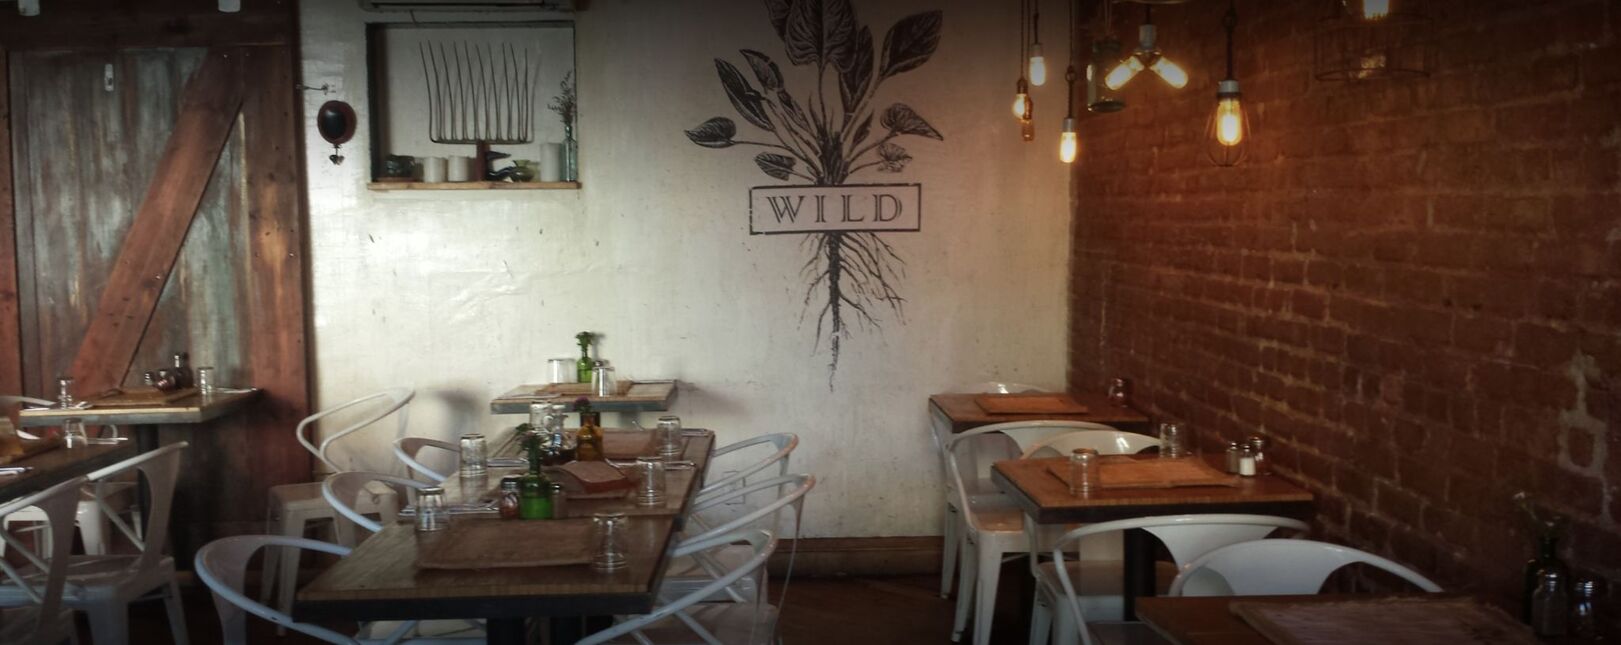 Wild Restaurant